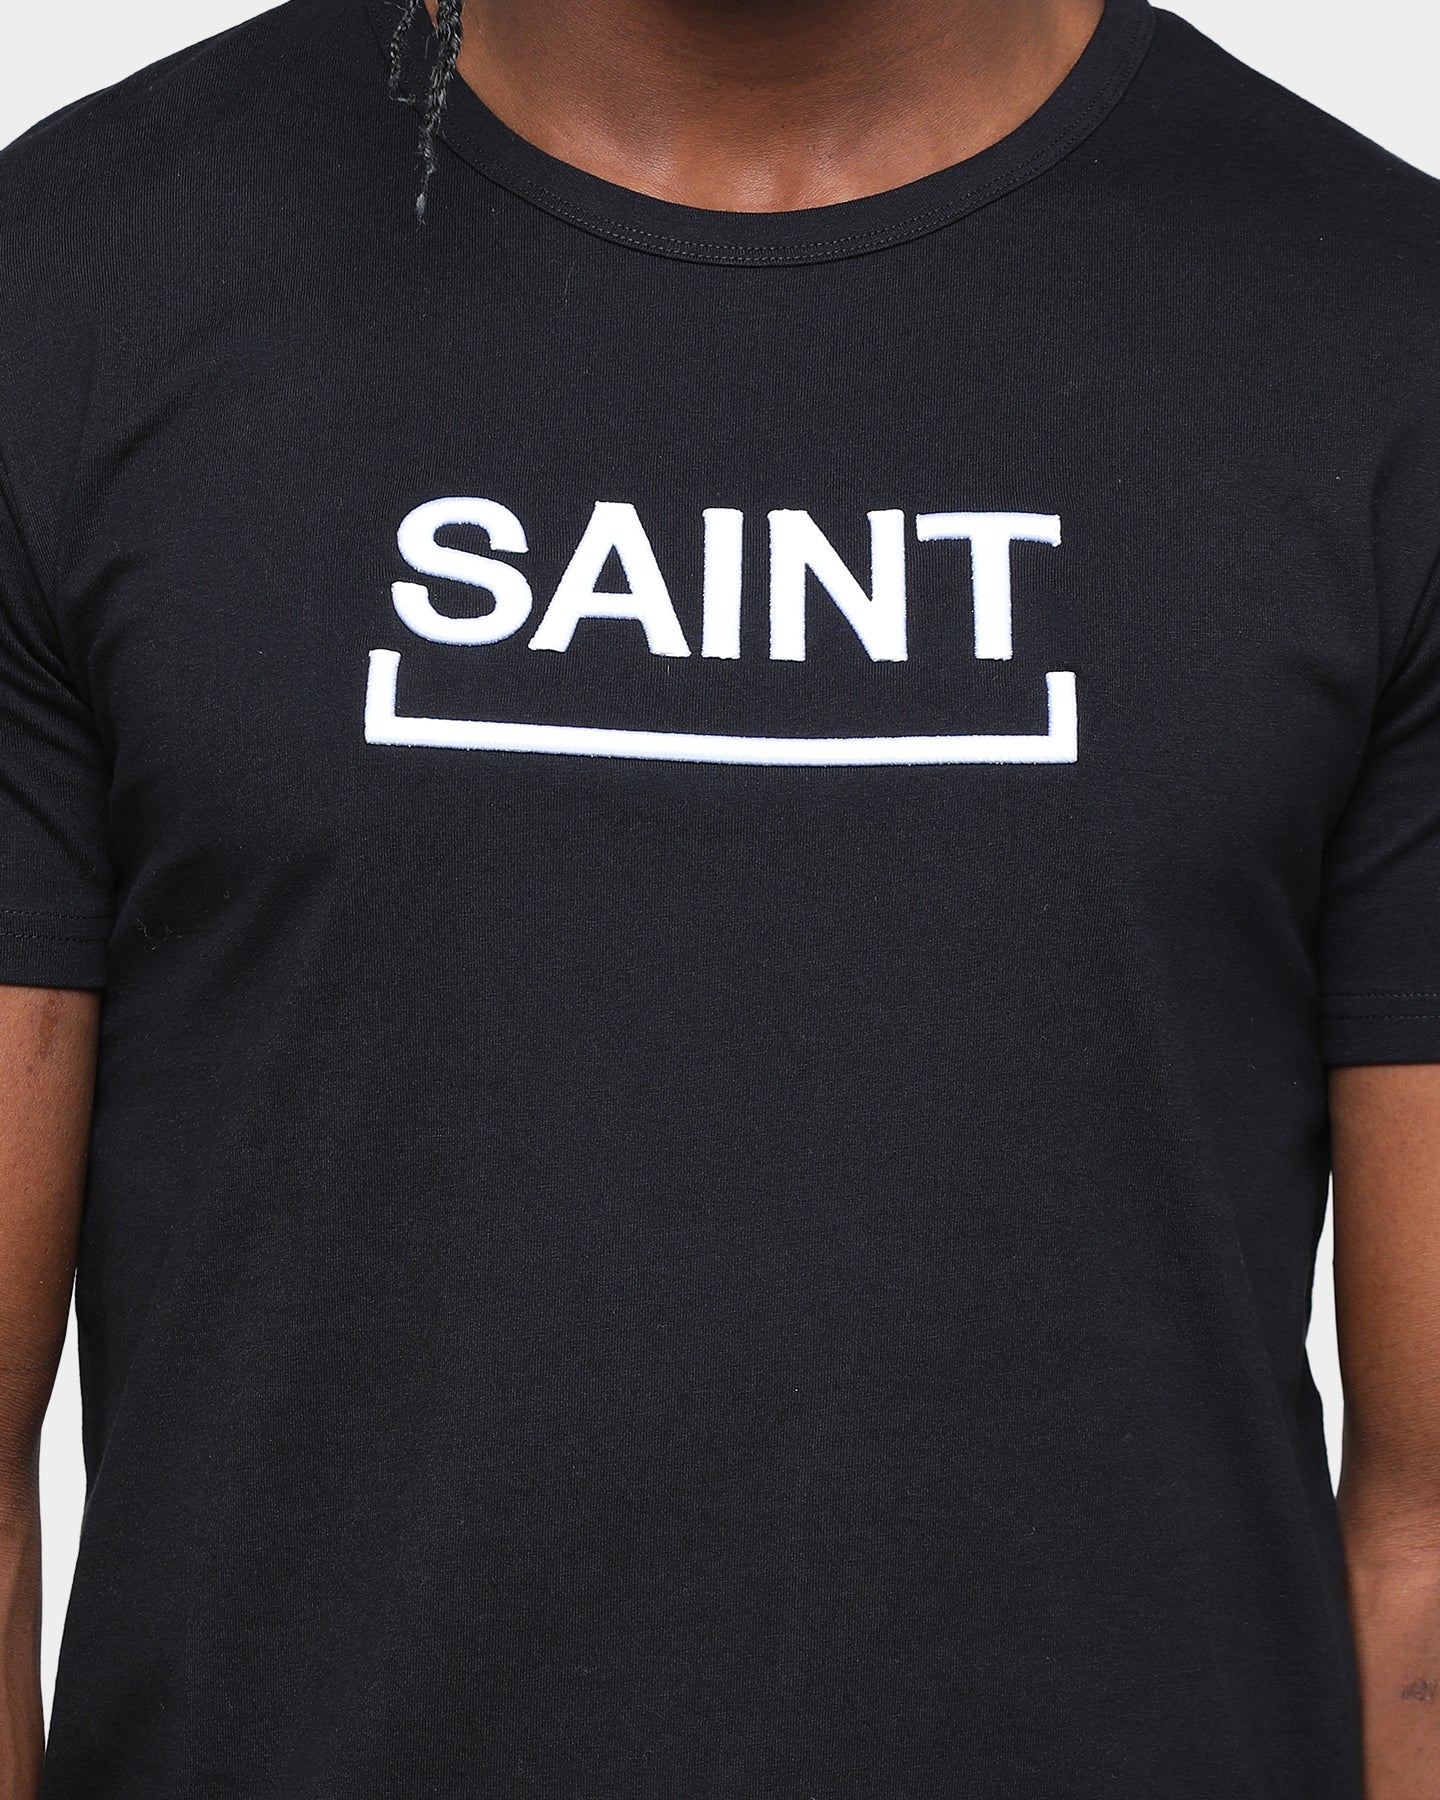 saint t shirt